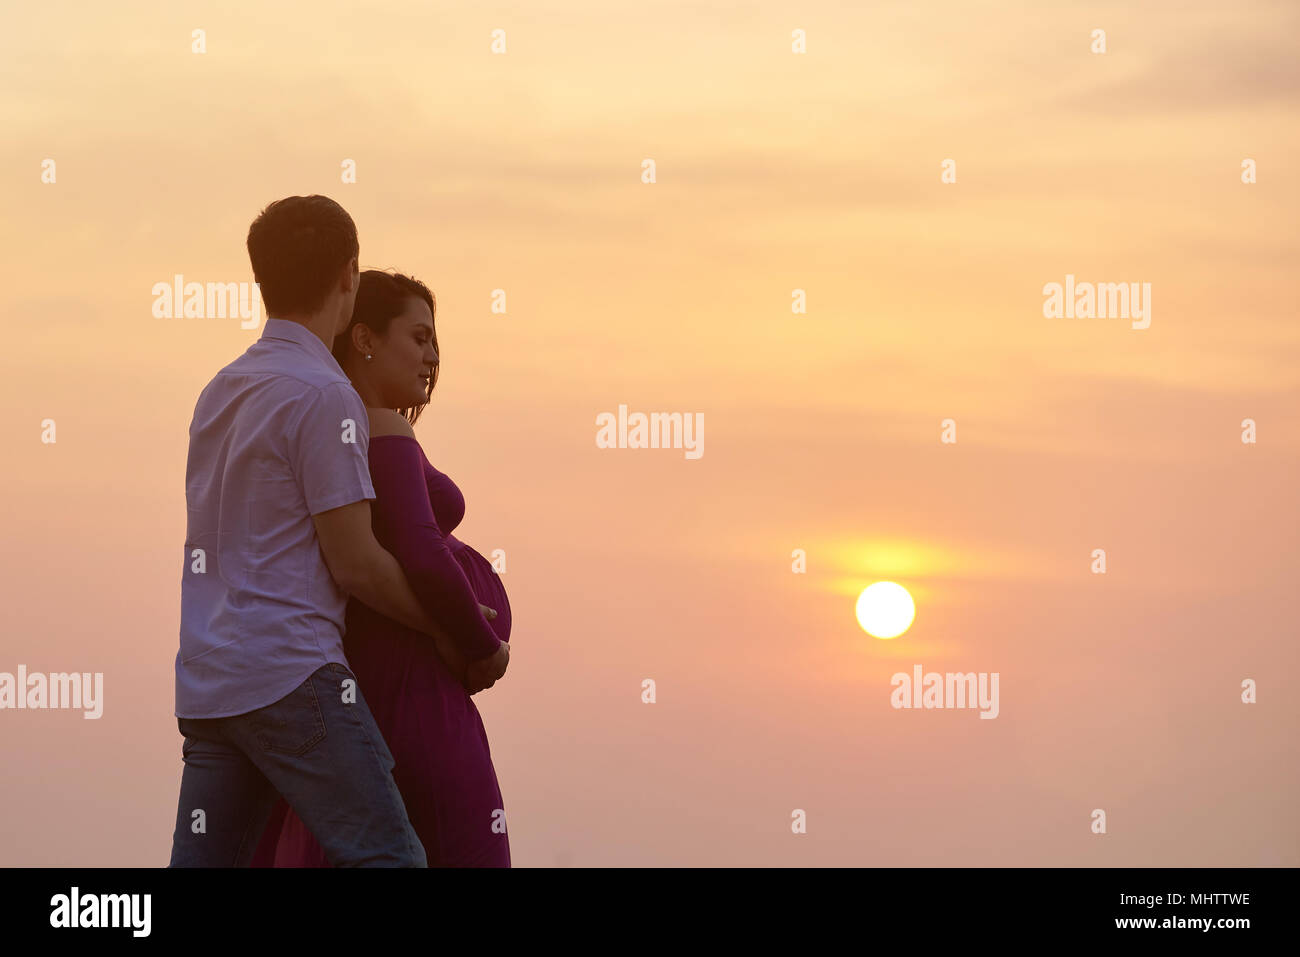 Silhouette des Menschen umarmen schwangere Frau auf Sonnenuntergang Hintergrund Stockfoto